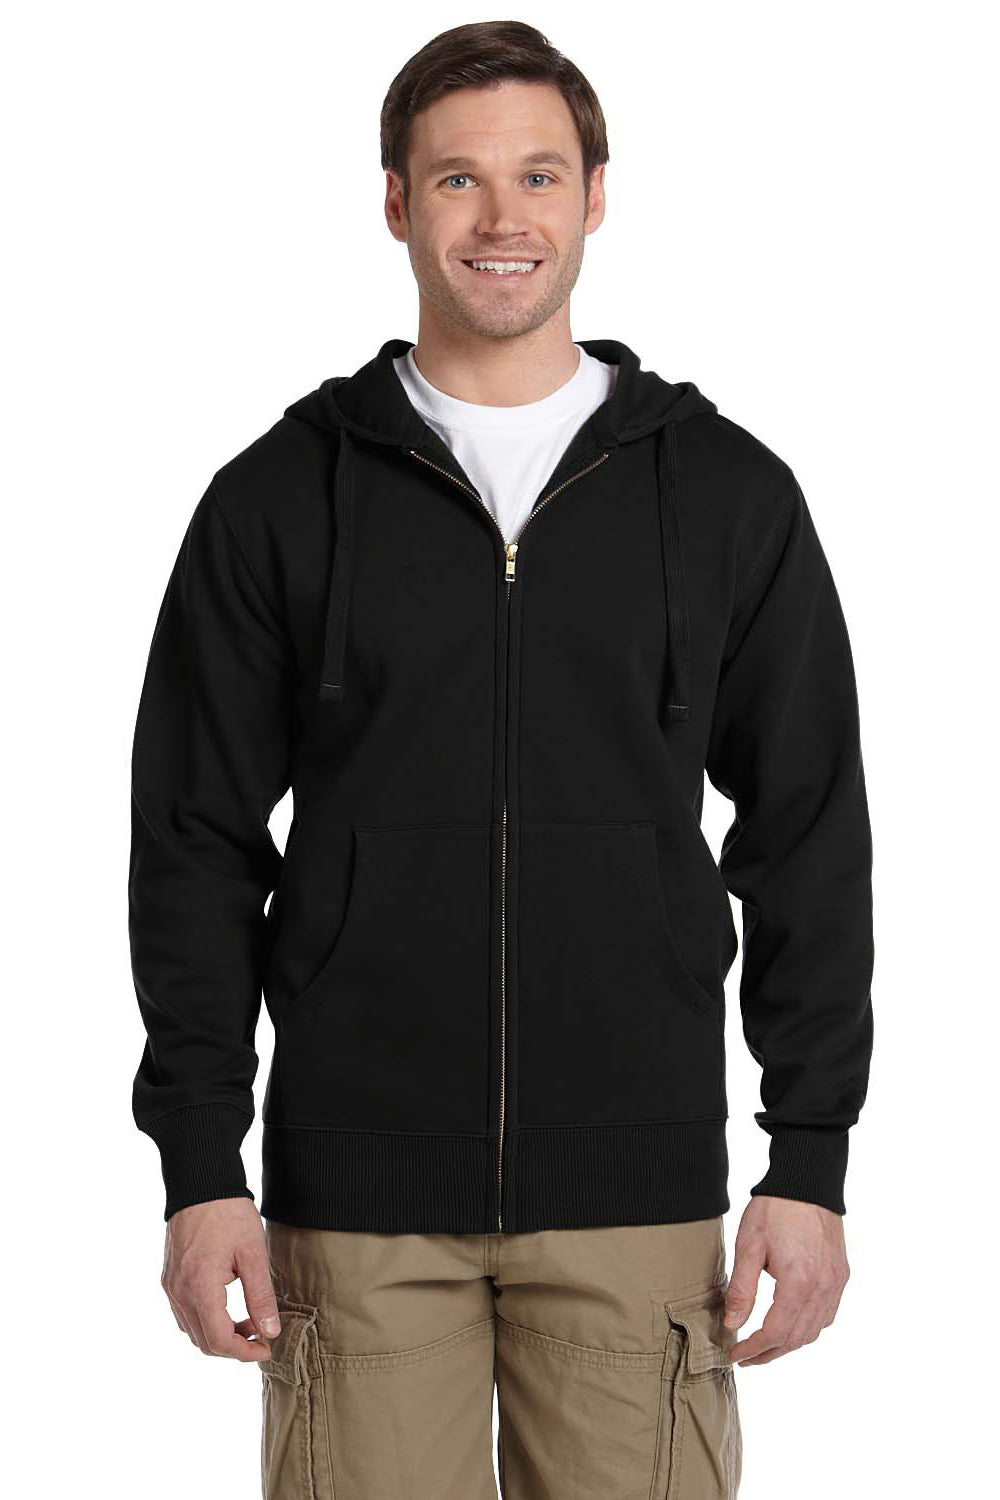 Econscious EC5650 Mens Full Zip Hooded Sweatshirt Hoodie Black Front